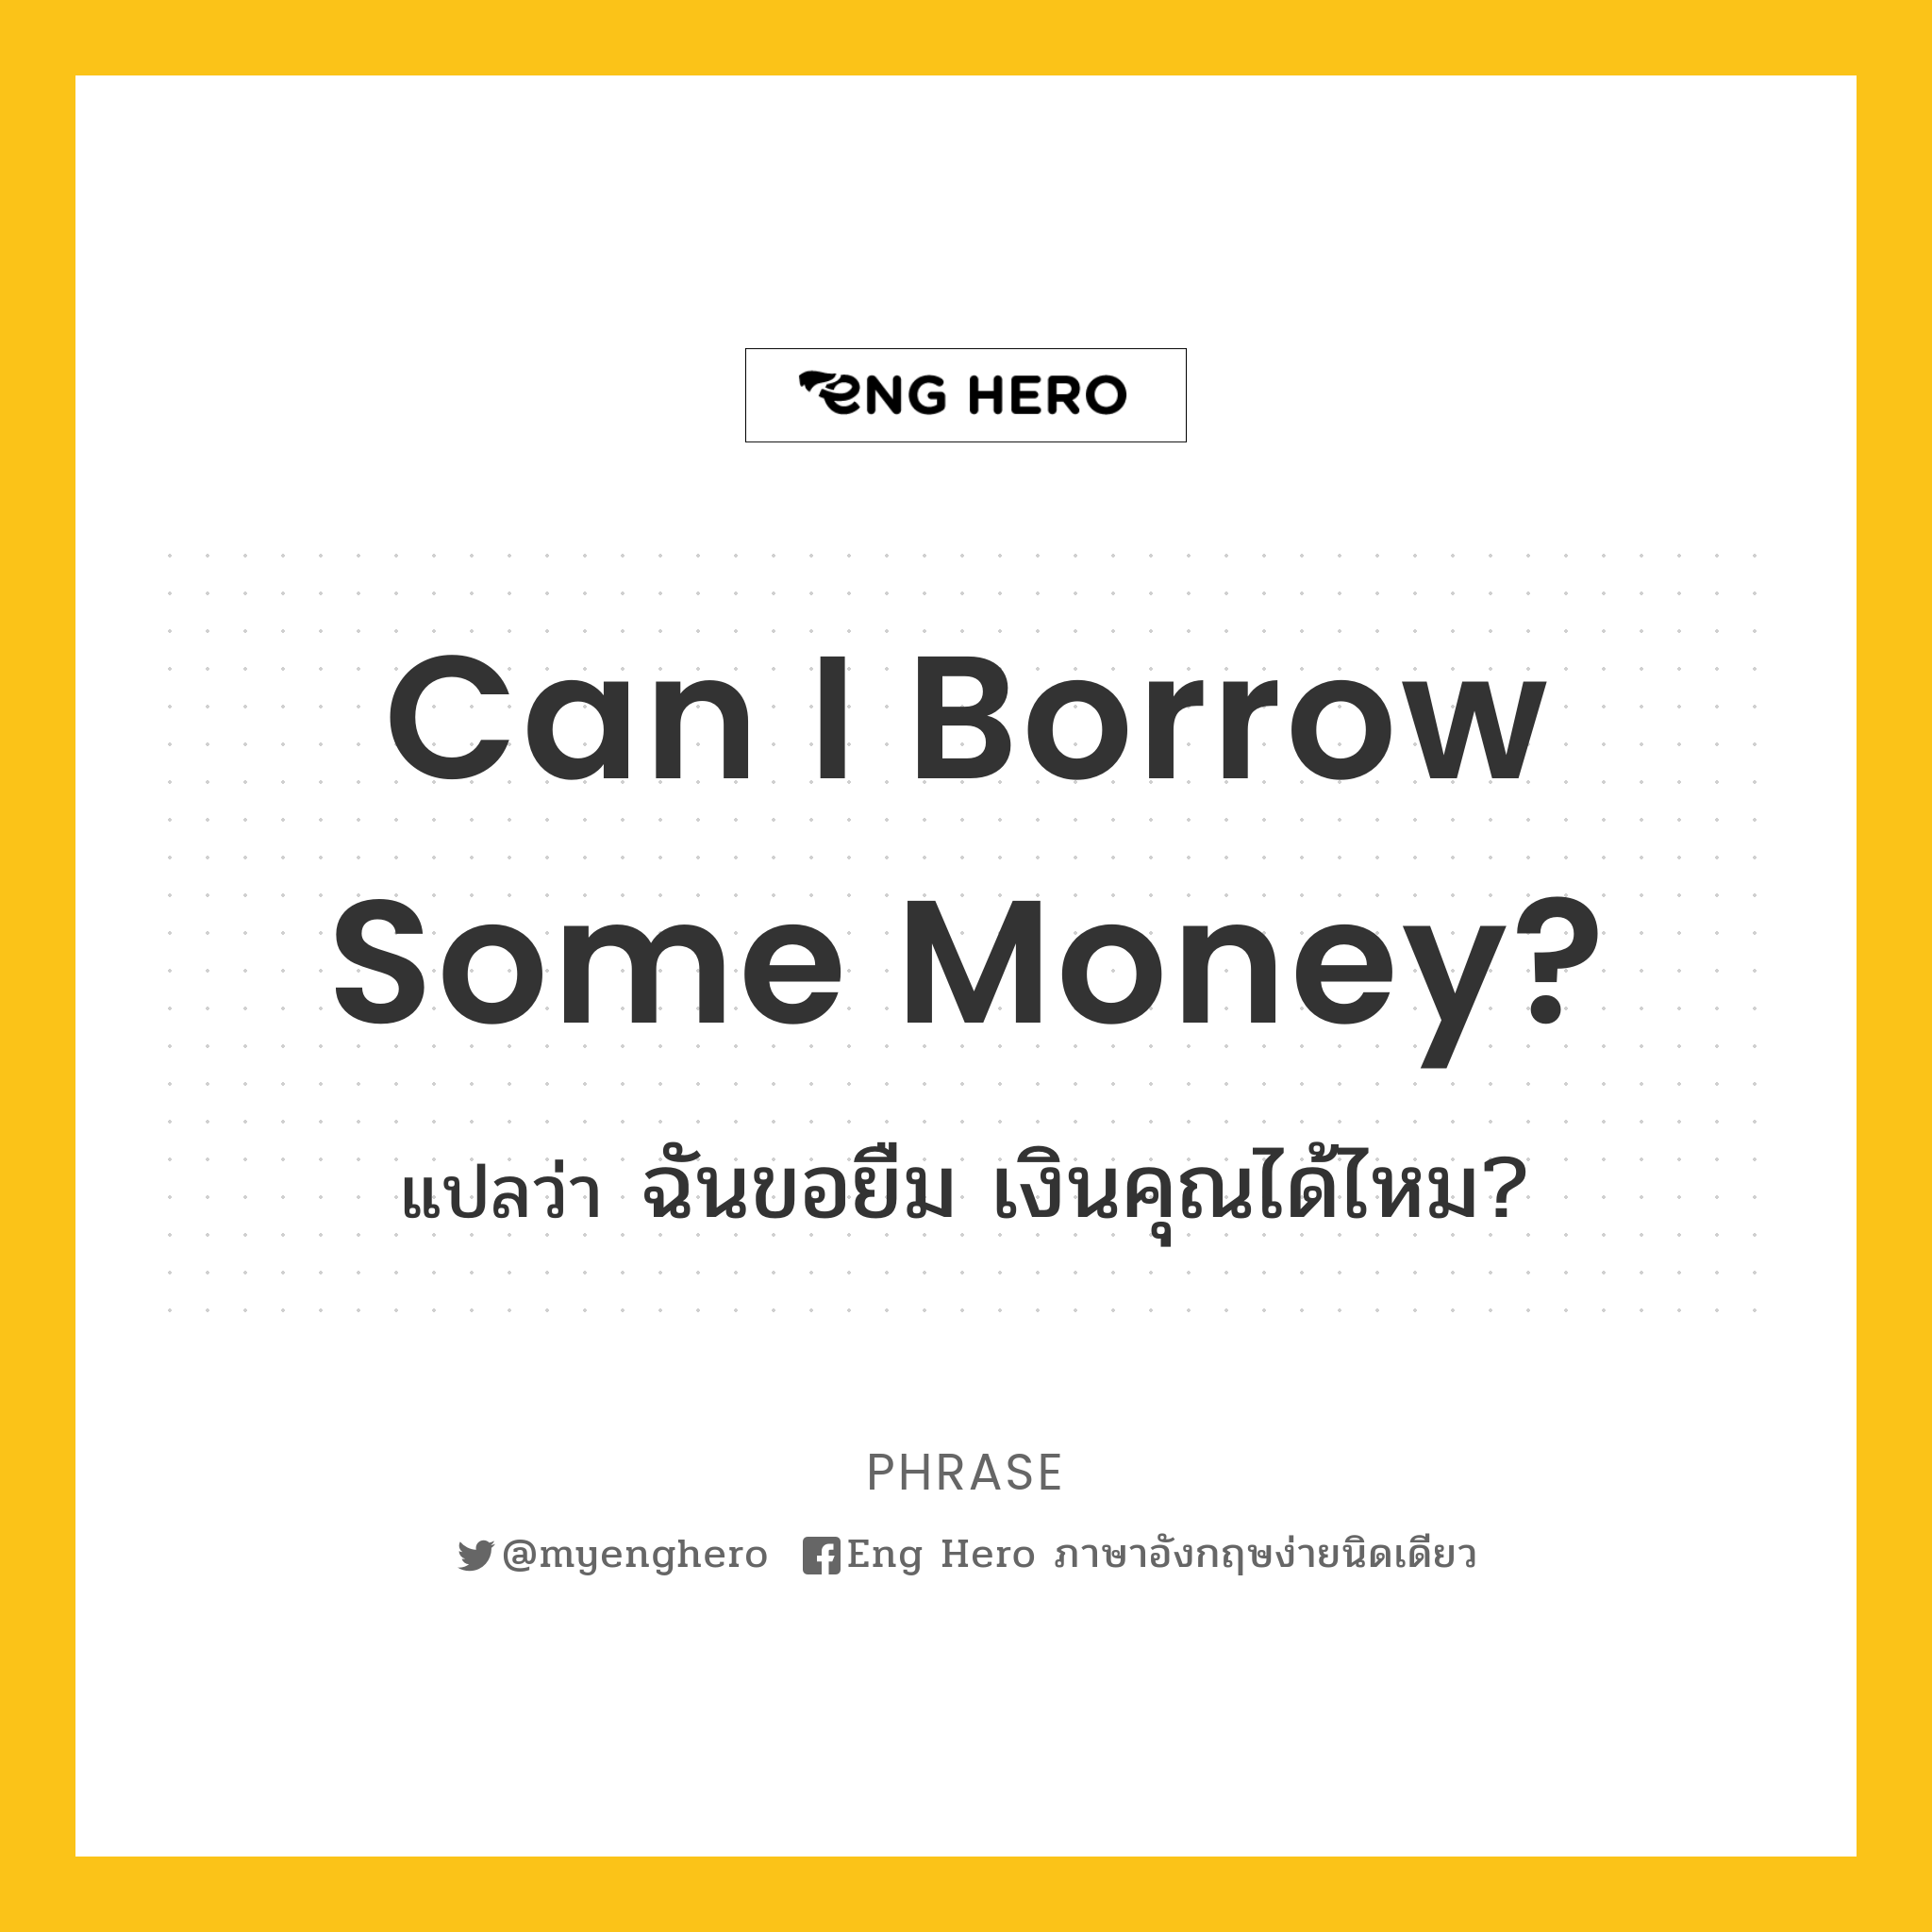 Can I borrow some money?